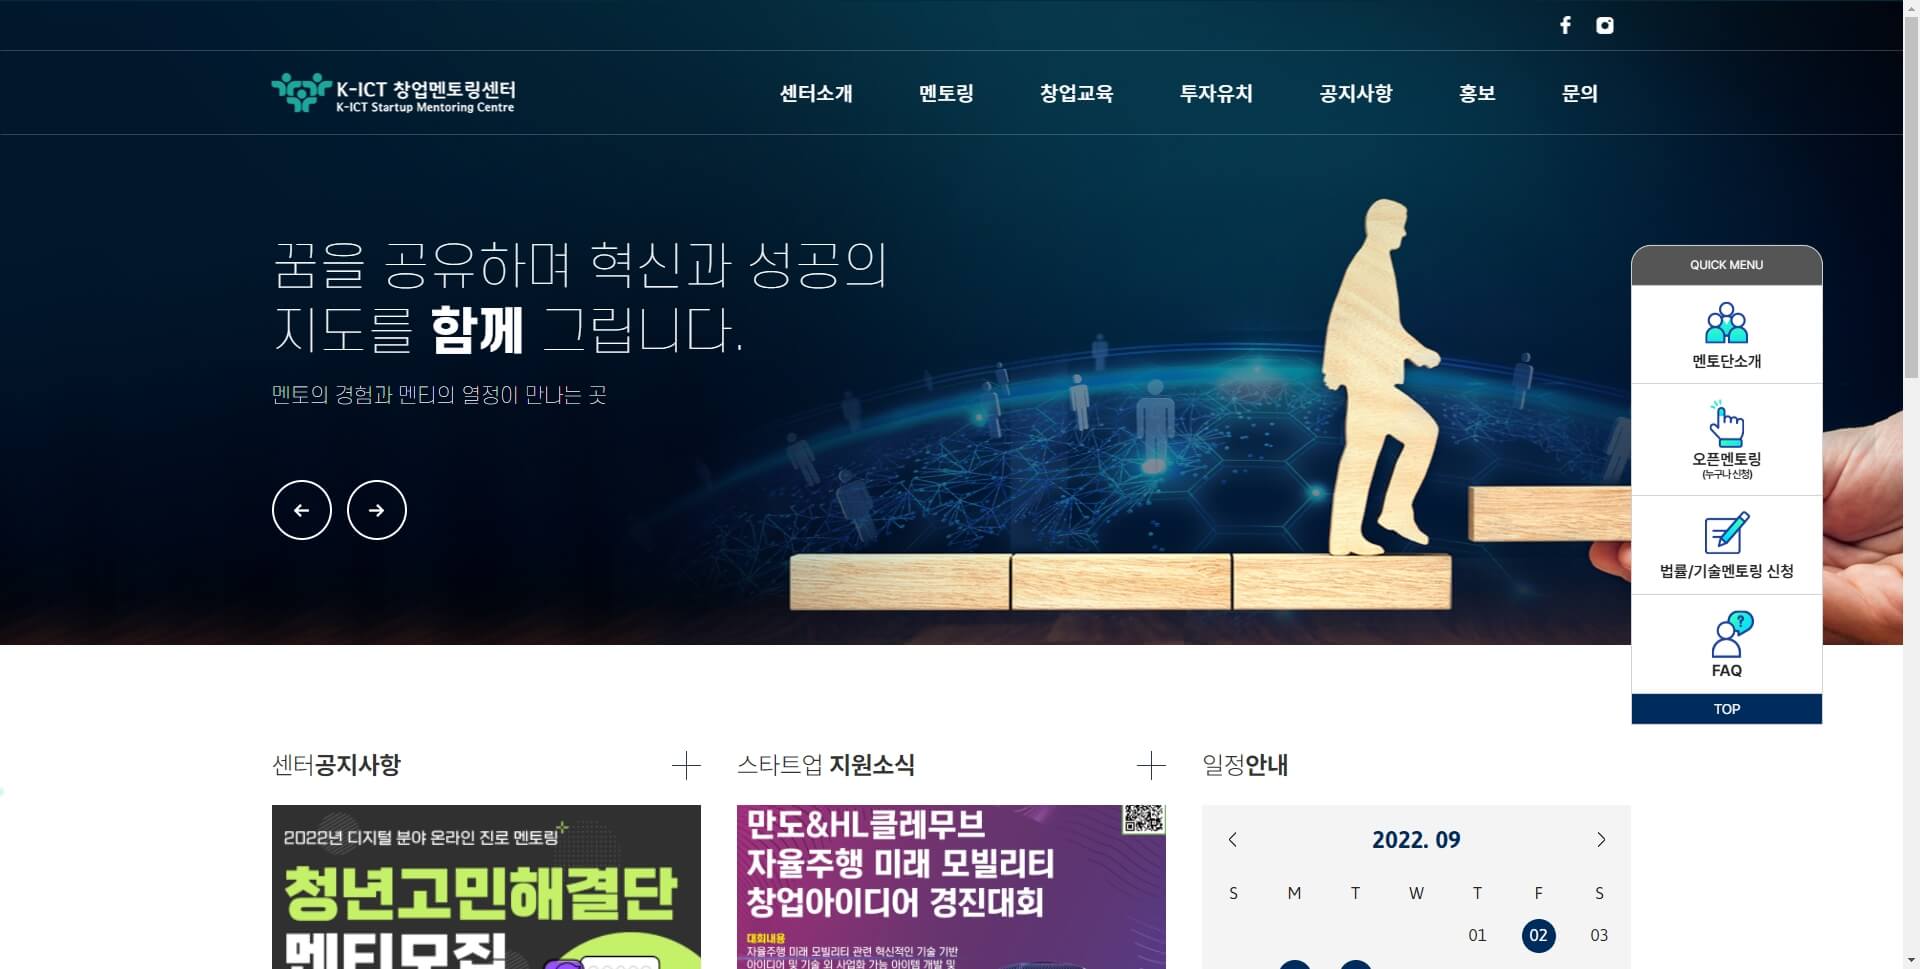 K-ICT 창업멘토링센터 : 한국 청년기업가정신재단이 운영하는 창업 멘토링 교육 전문기관